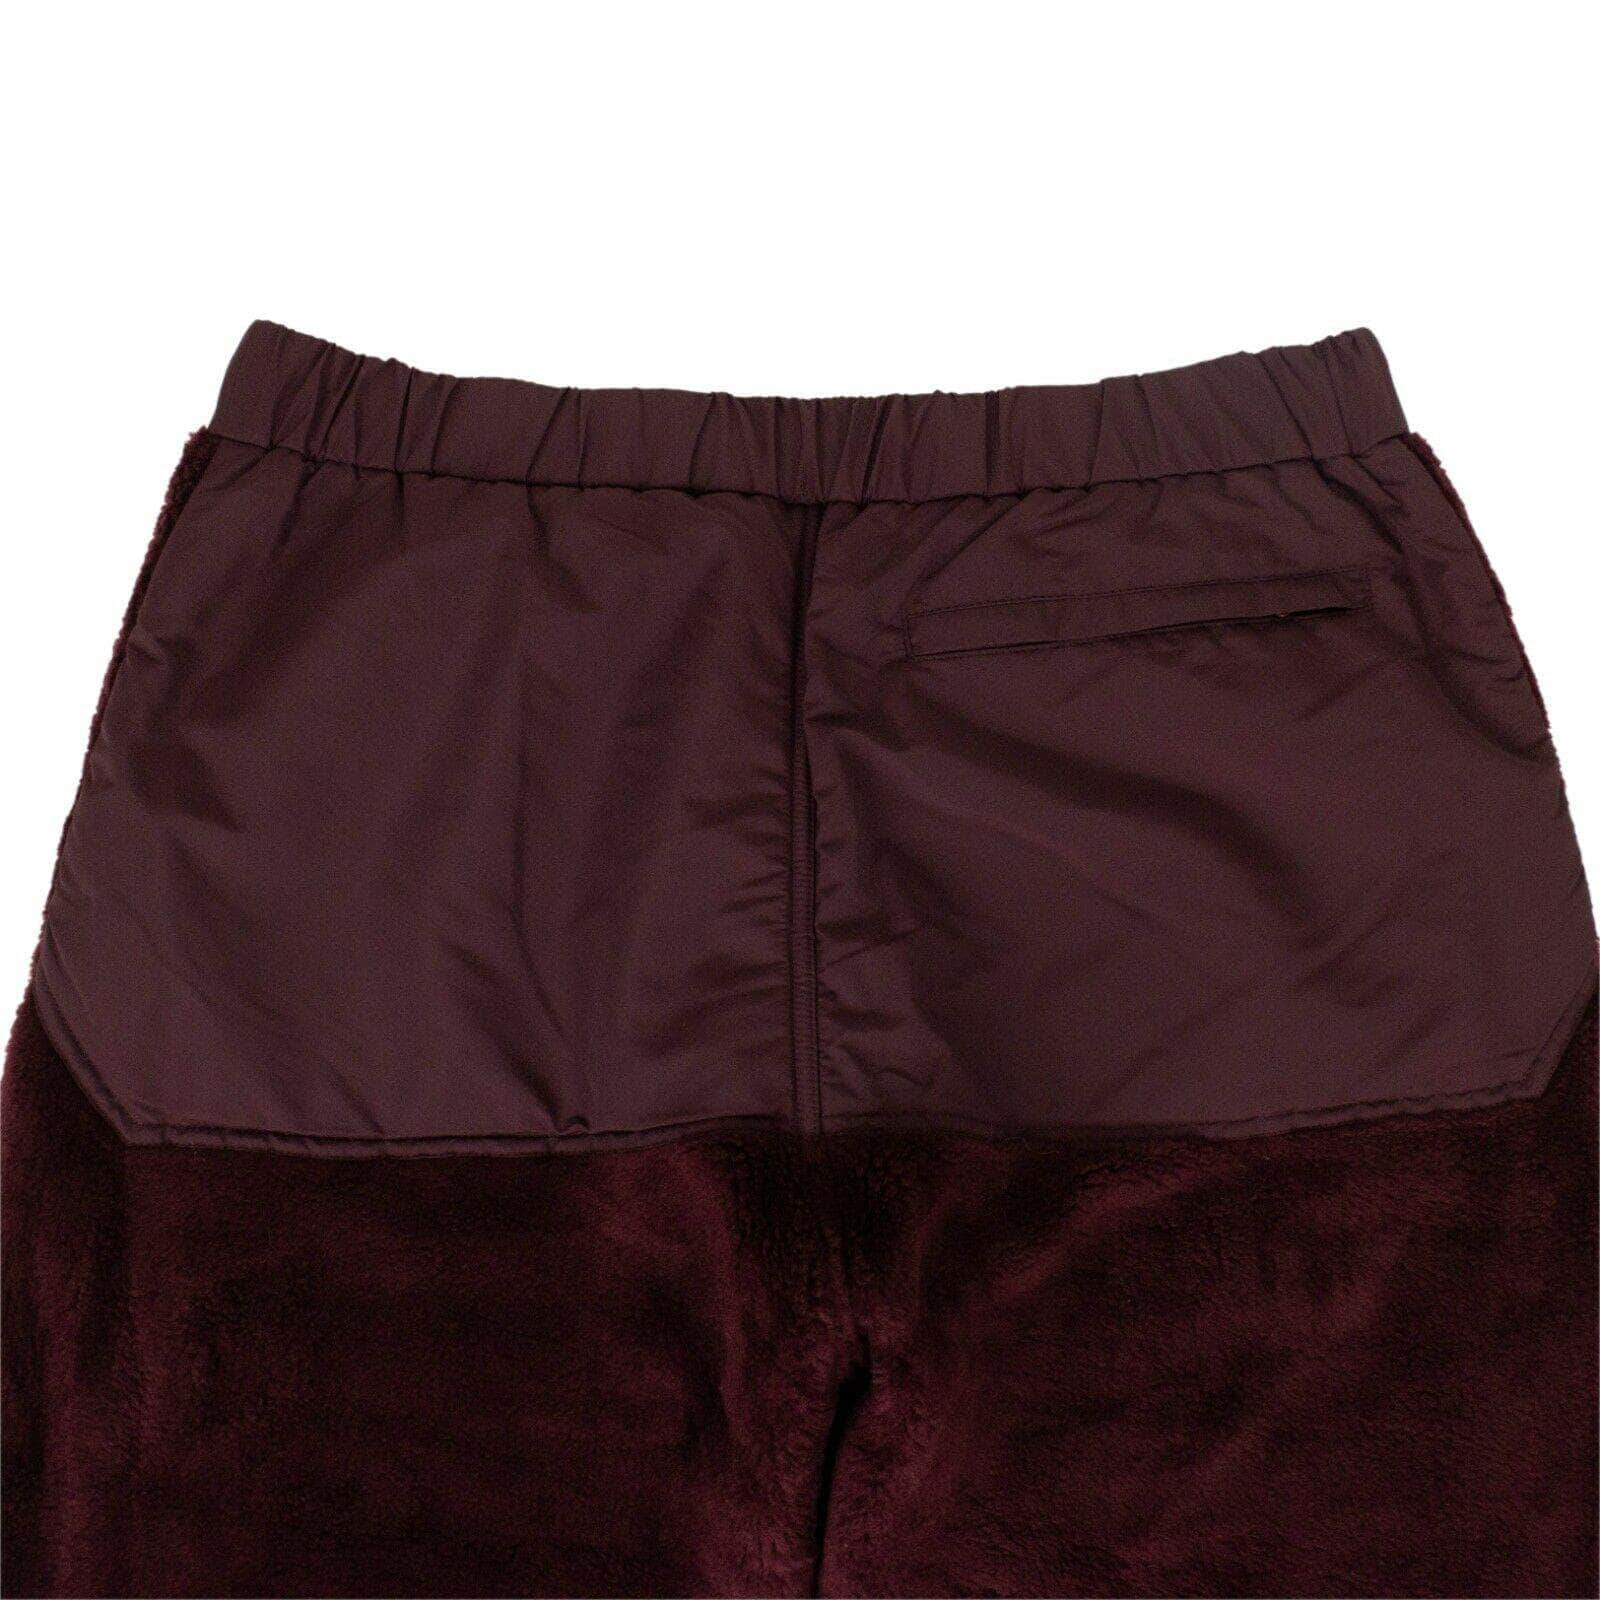 UNDERCOVER Men's Pants Acrylic Pants - Bordeaux Purple